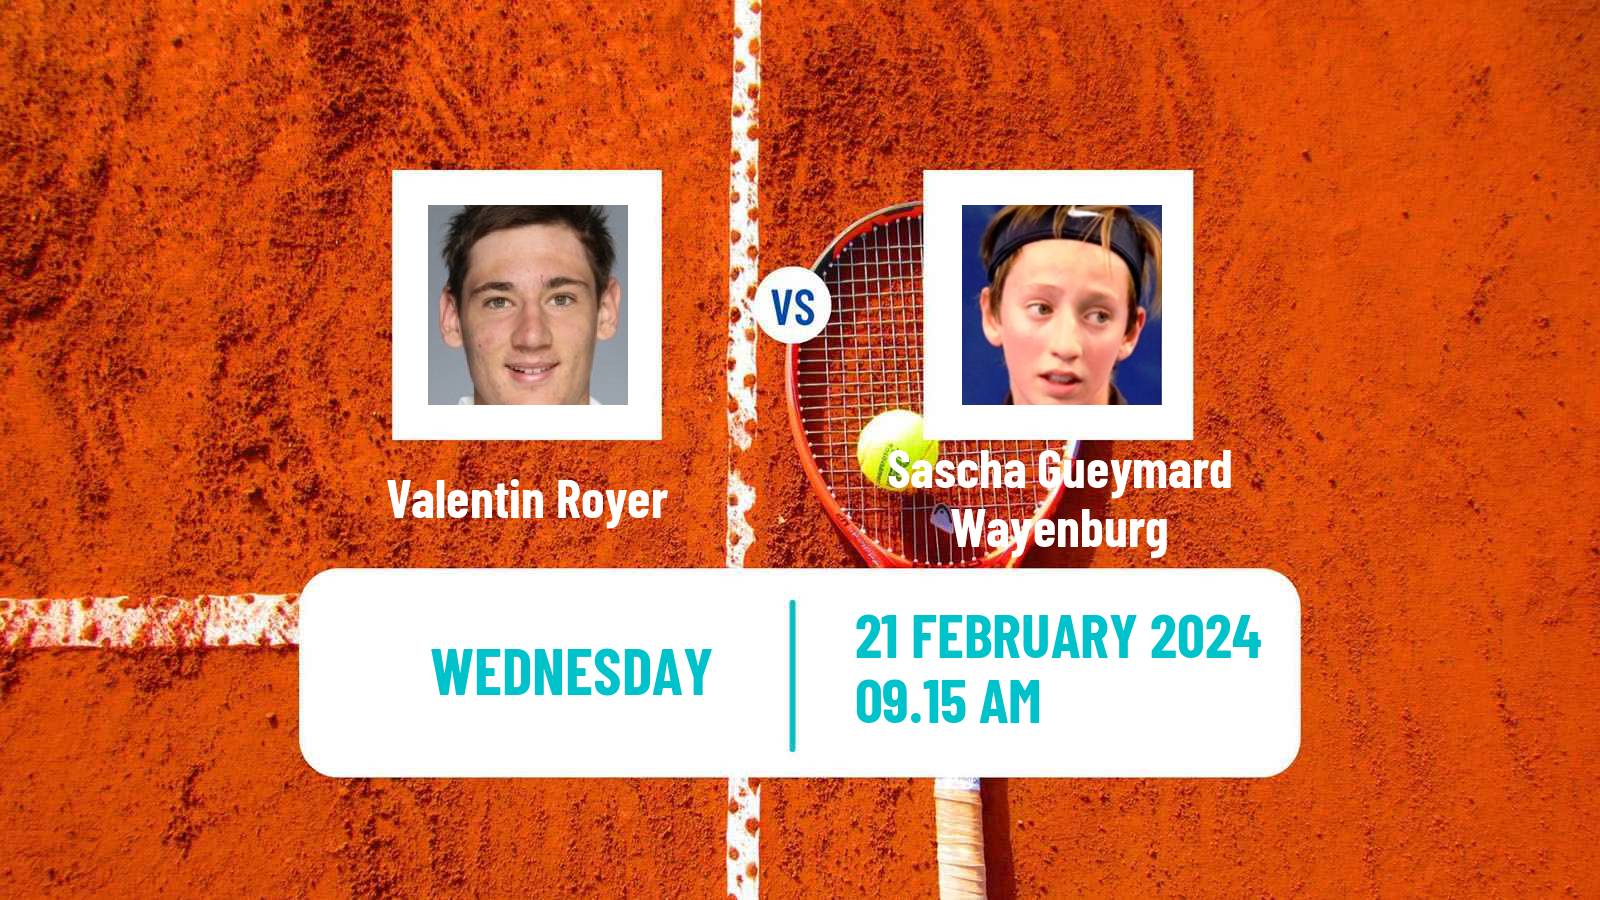 Tennis ITF M25 Trento Men Valentin Royer - Sascha Gueymard Wayenburg